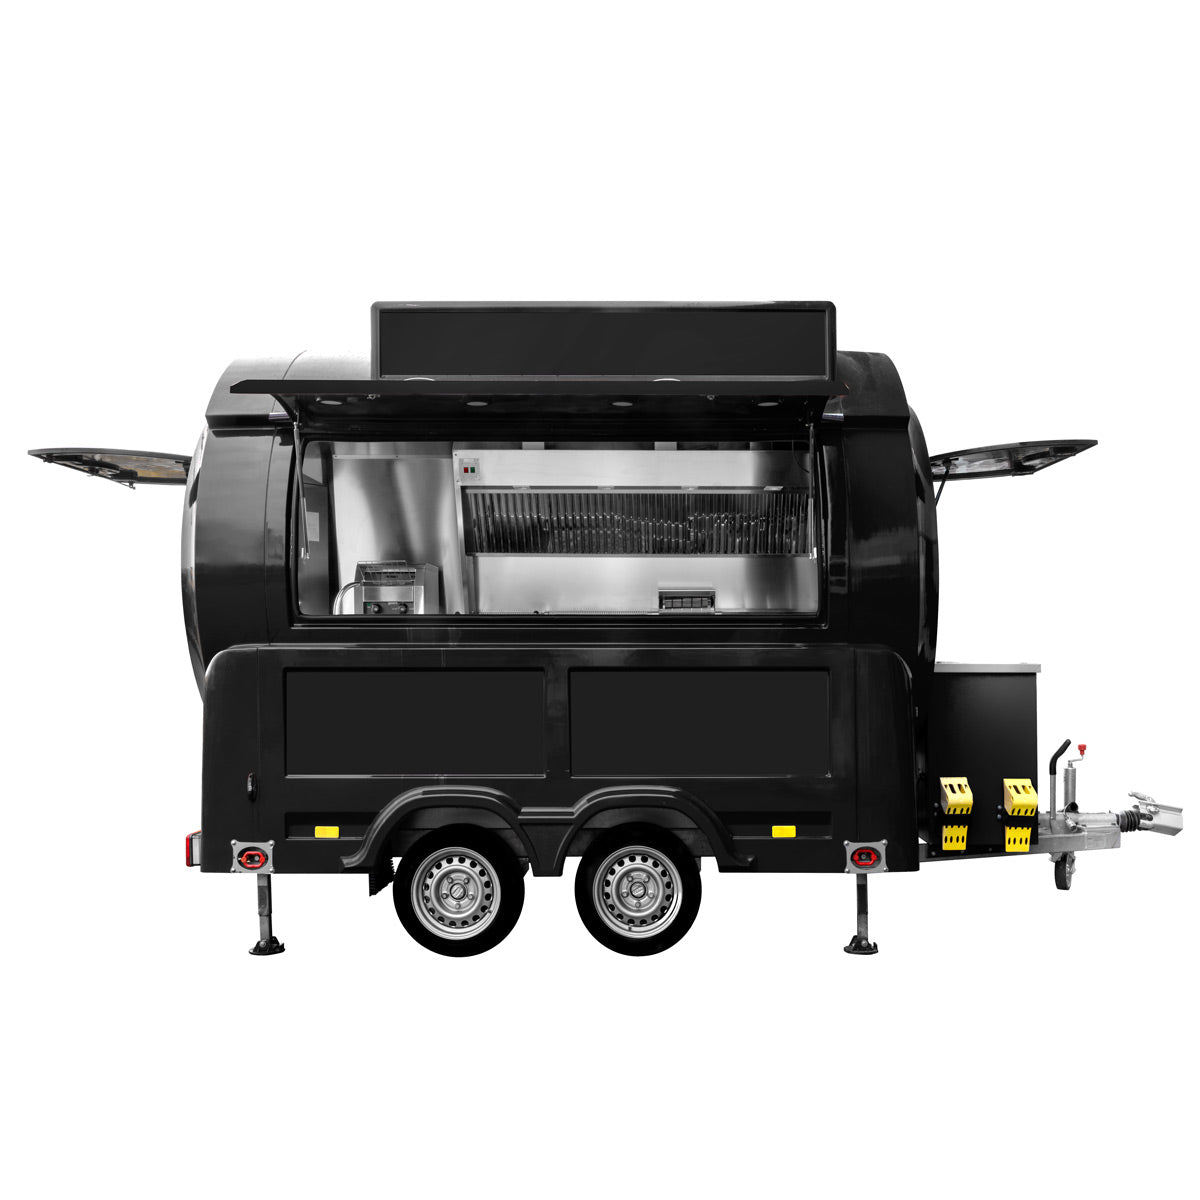 Mobilt køkken af GGM - Emne: Kebab / Basisudstyr